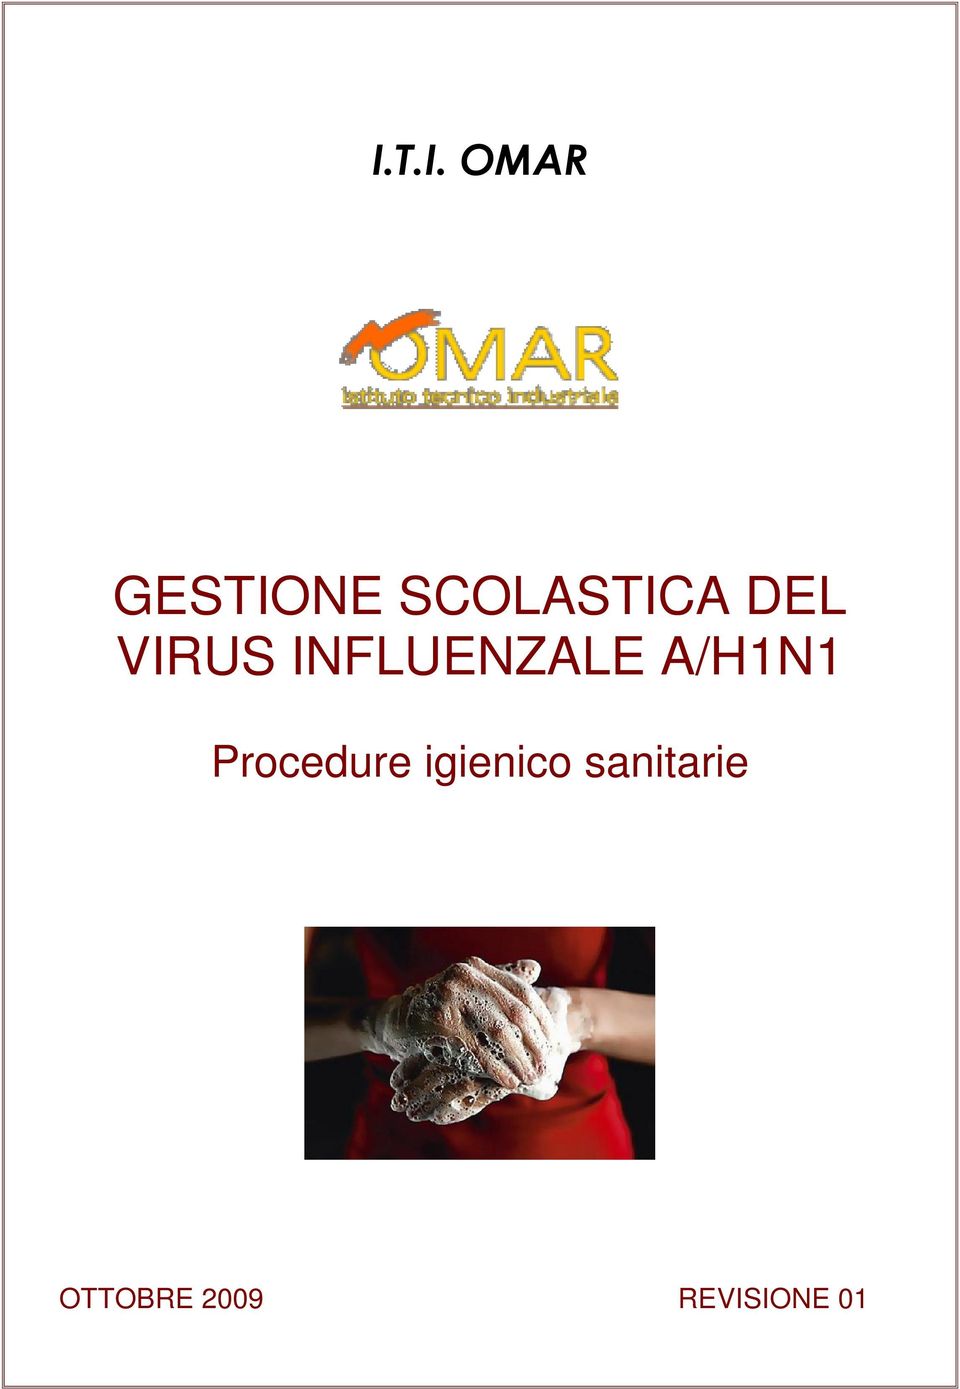 INFLUENZALE A/H1N1 Procedure